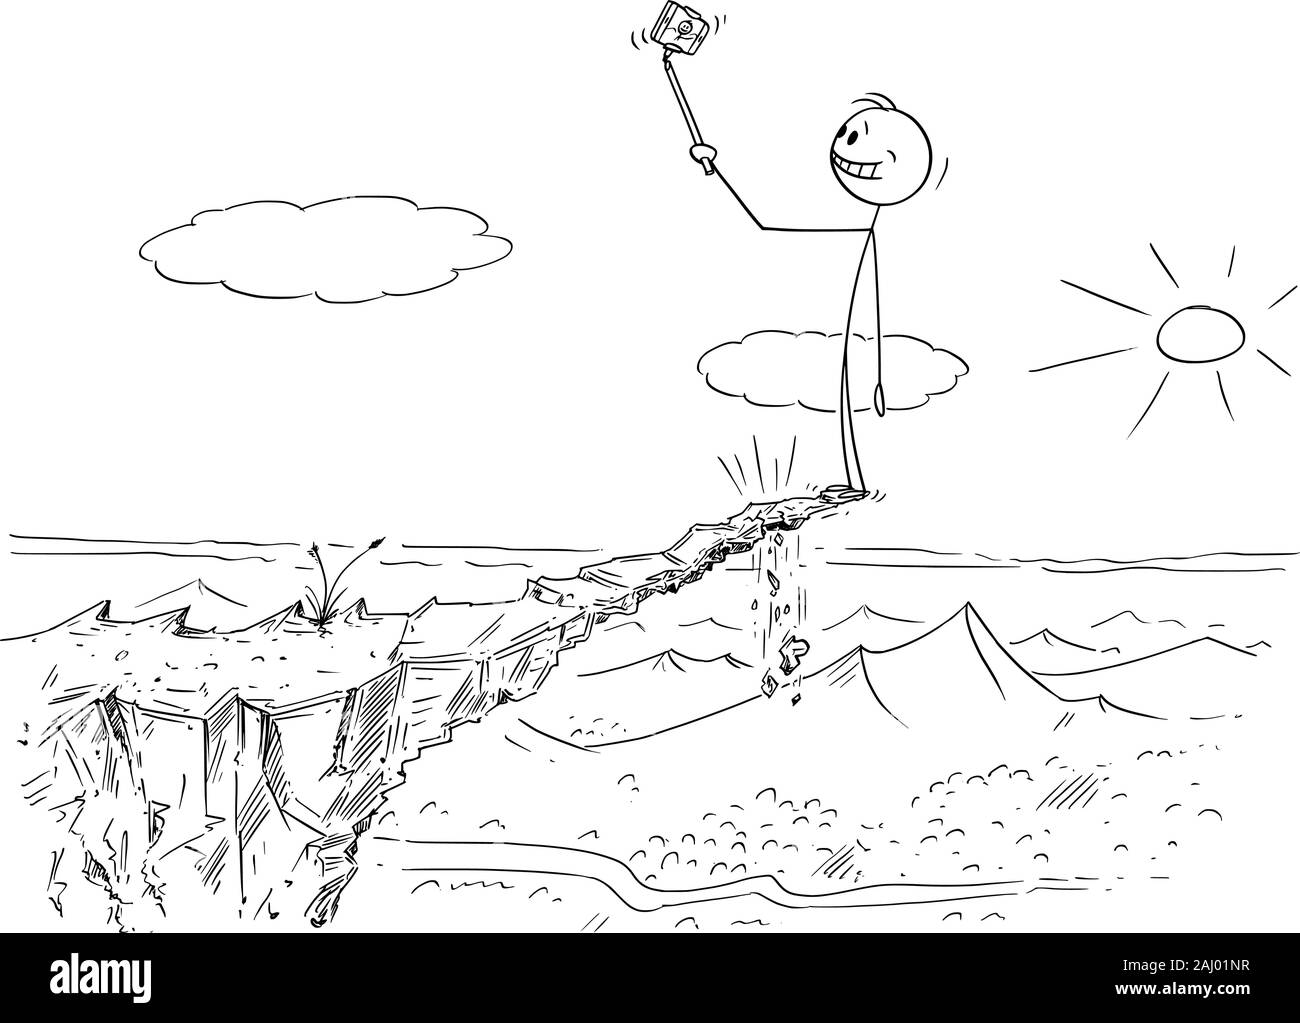 Vektor cartoon Strichmännchen Zeichnen konzeptionelle Darstellung der Mann unter gefährlichen Foto selfie auf instabile High Rock sein Leben riskieren, weil er nach unten fallen kann. Stock Vektor